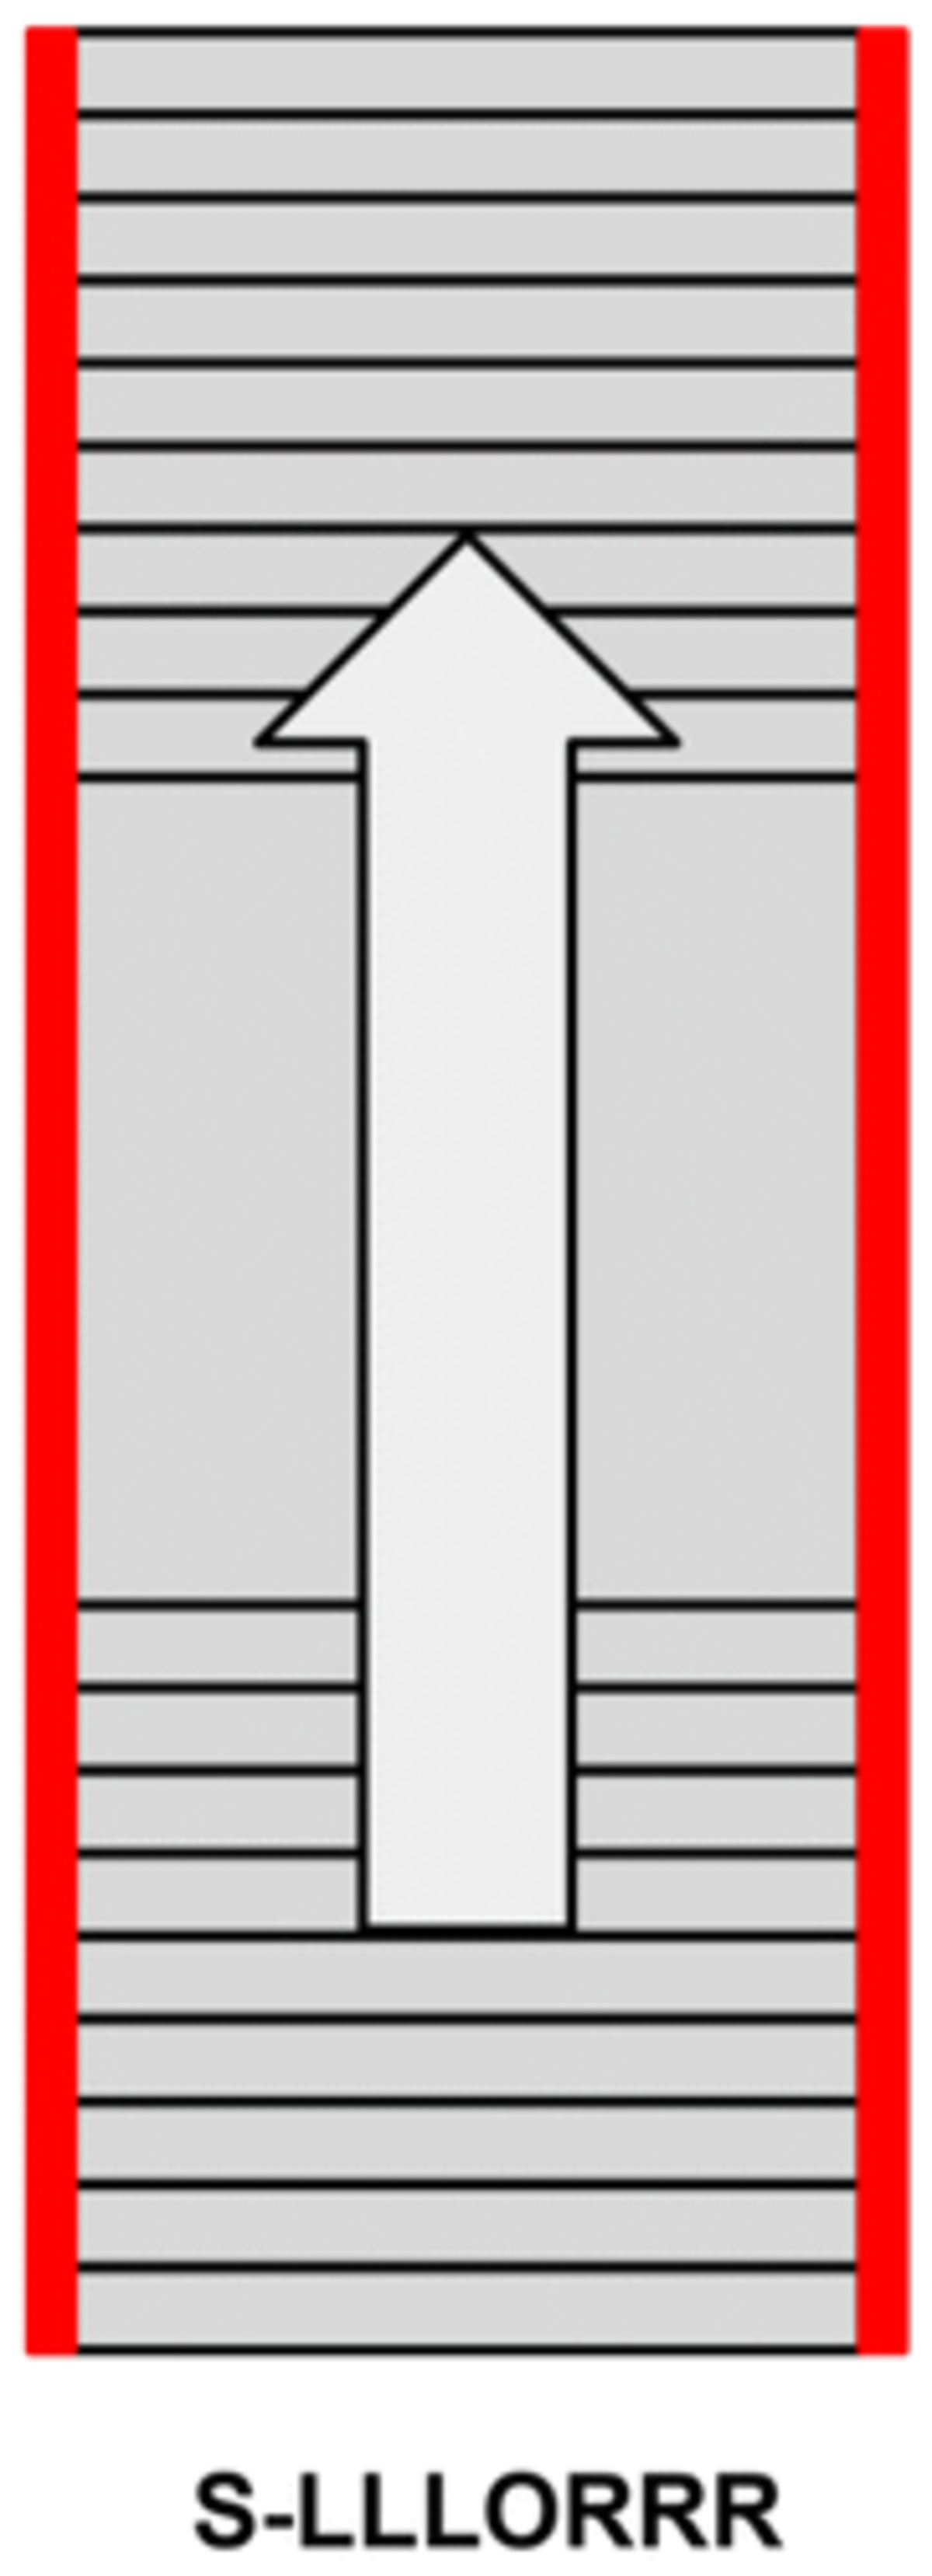 Dubbele balustradetrap voor buiten met bordes, leuning aan beide zijden.